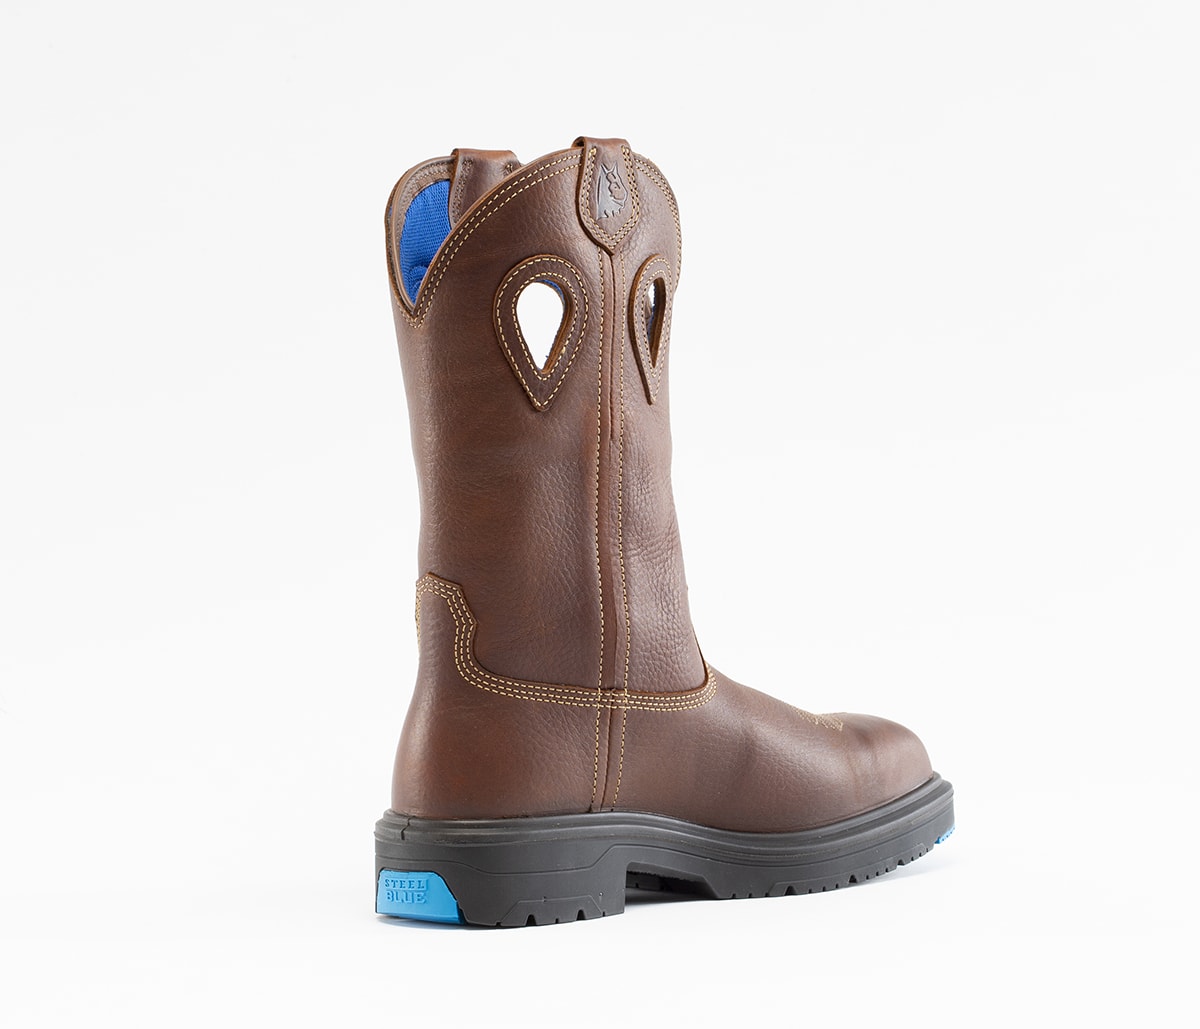 buy steel blue boots online